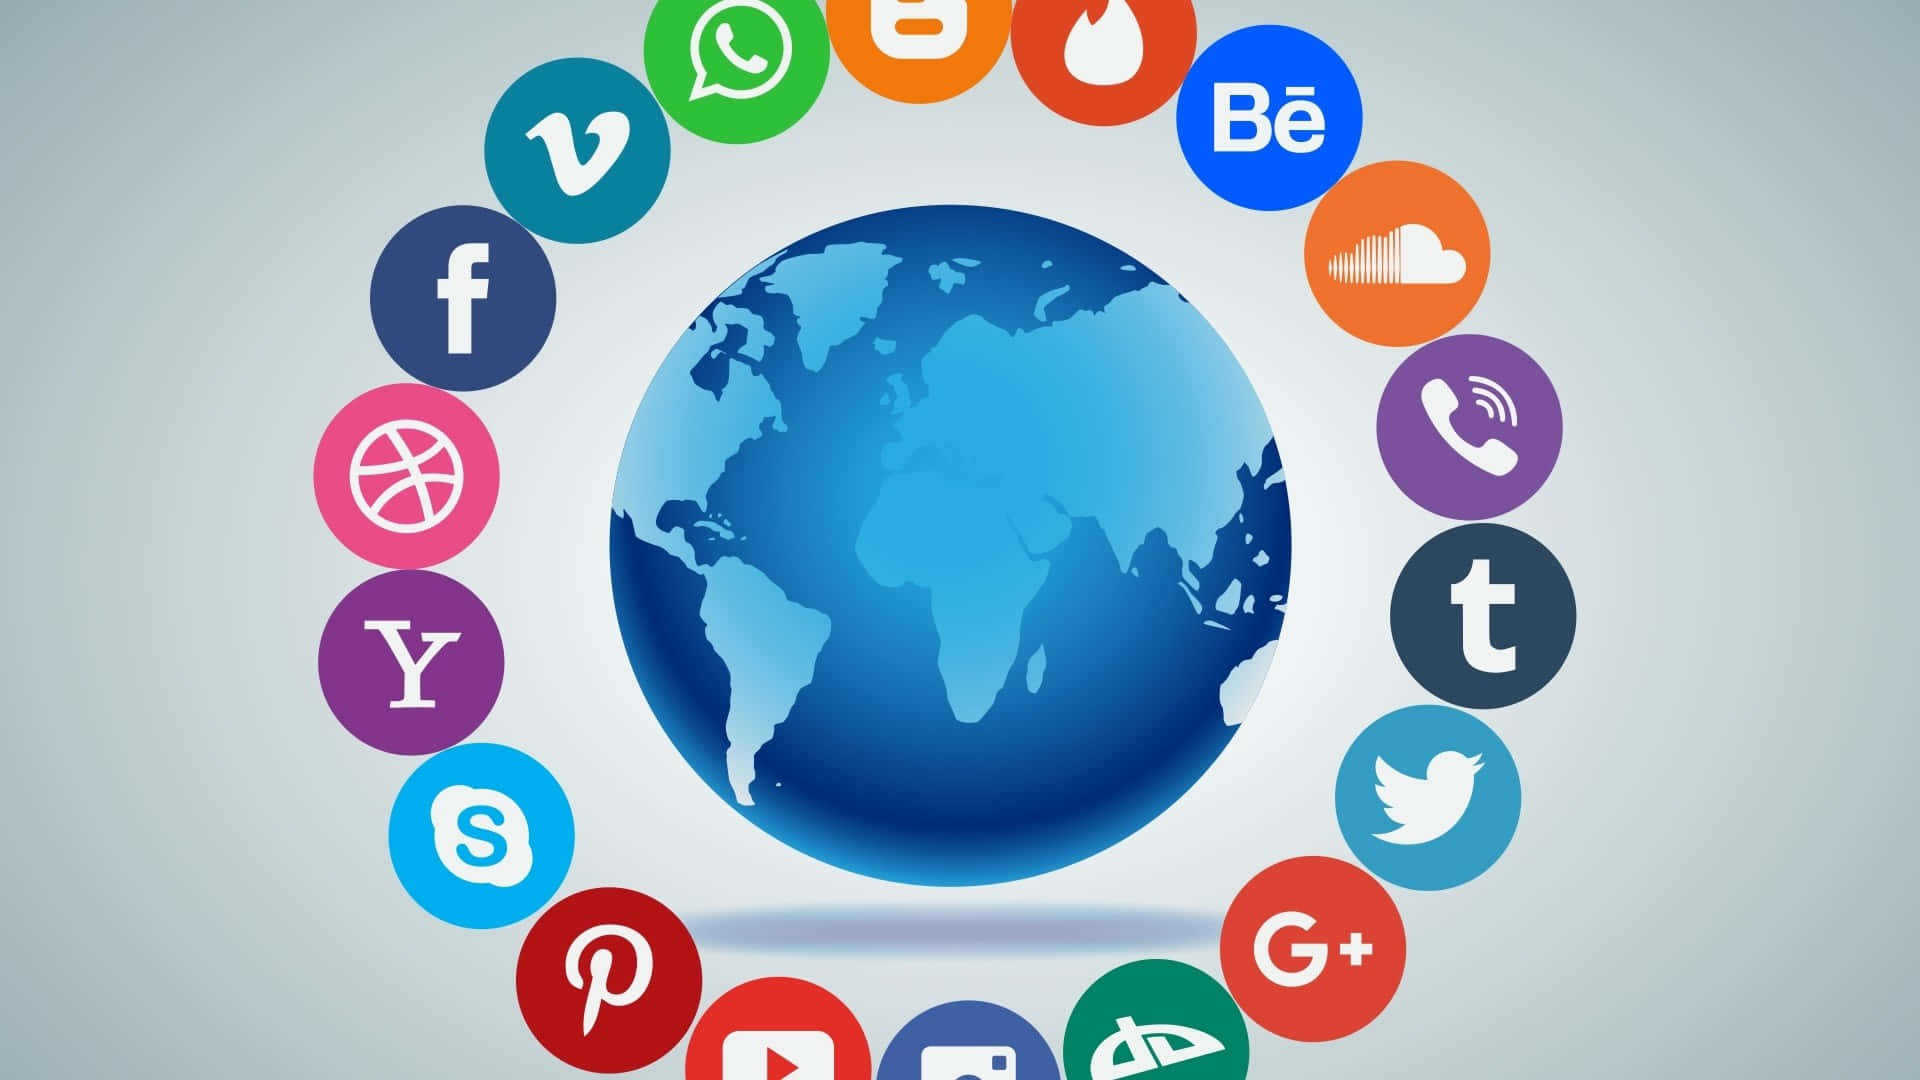 Socialmedia-marknadsföring - Vad Är Det?